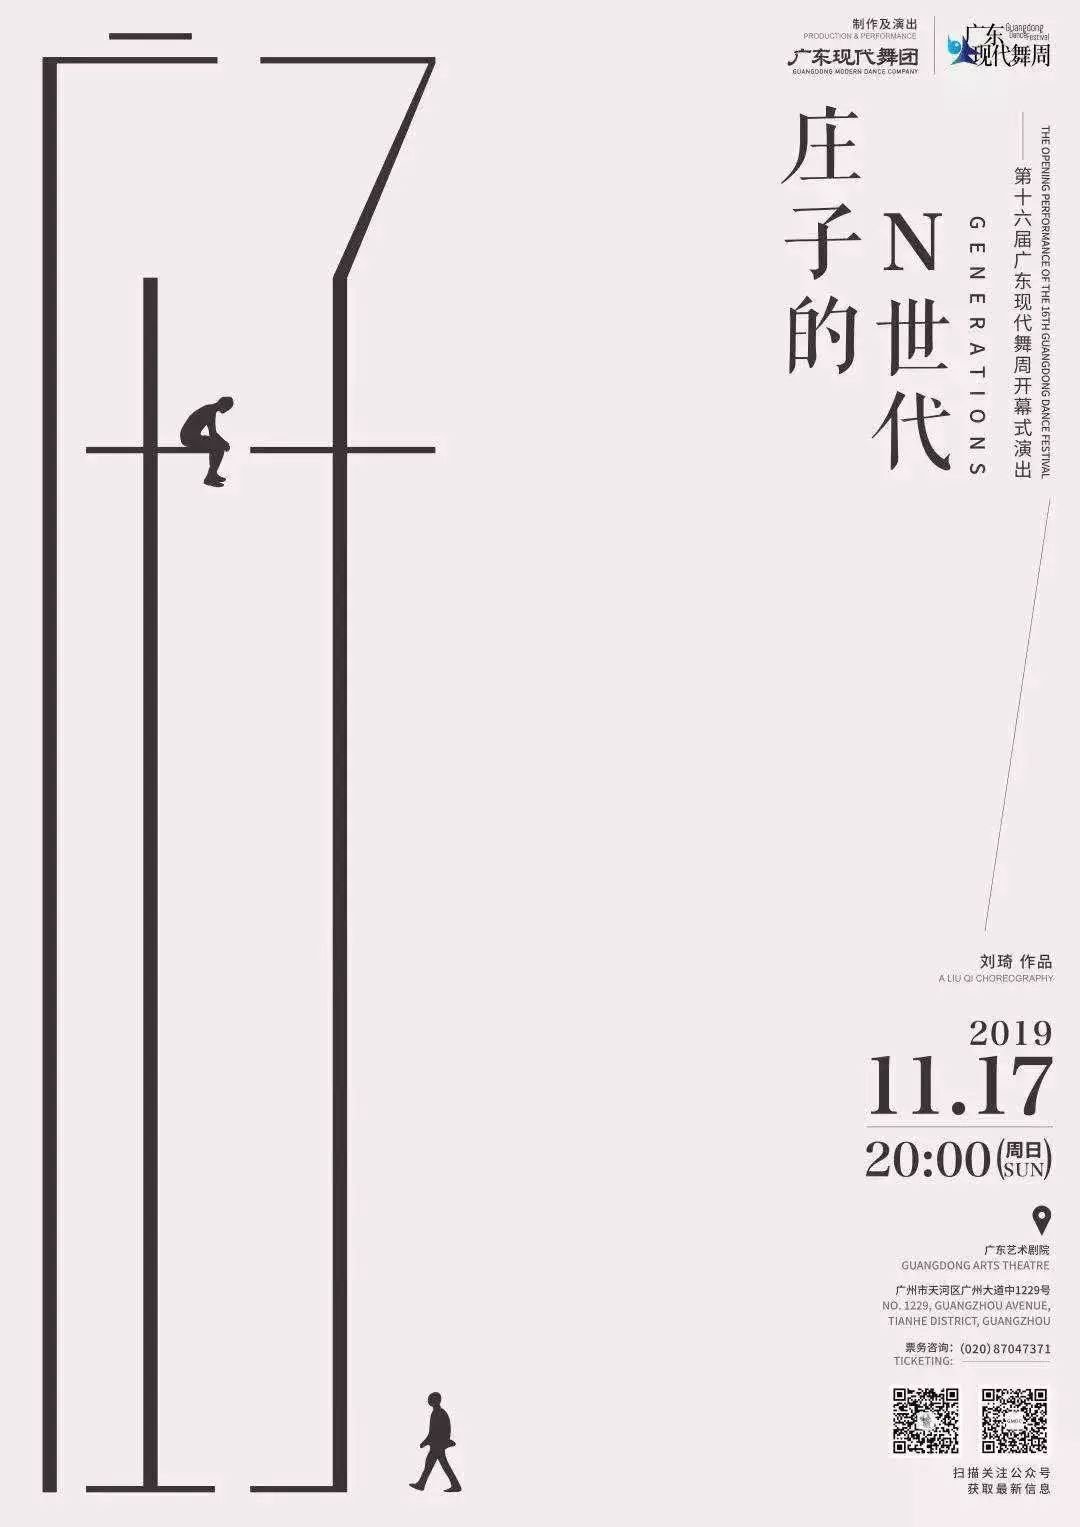 2019第16届广东现代舞周时间、地点一览